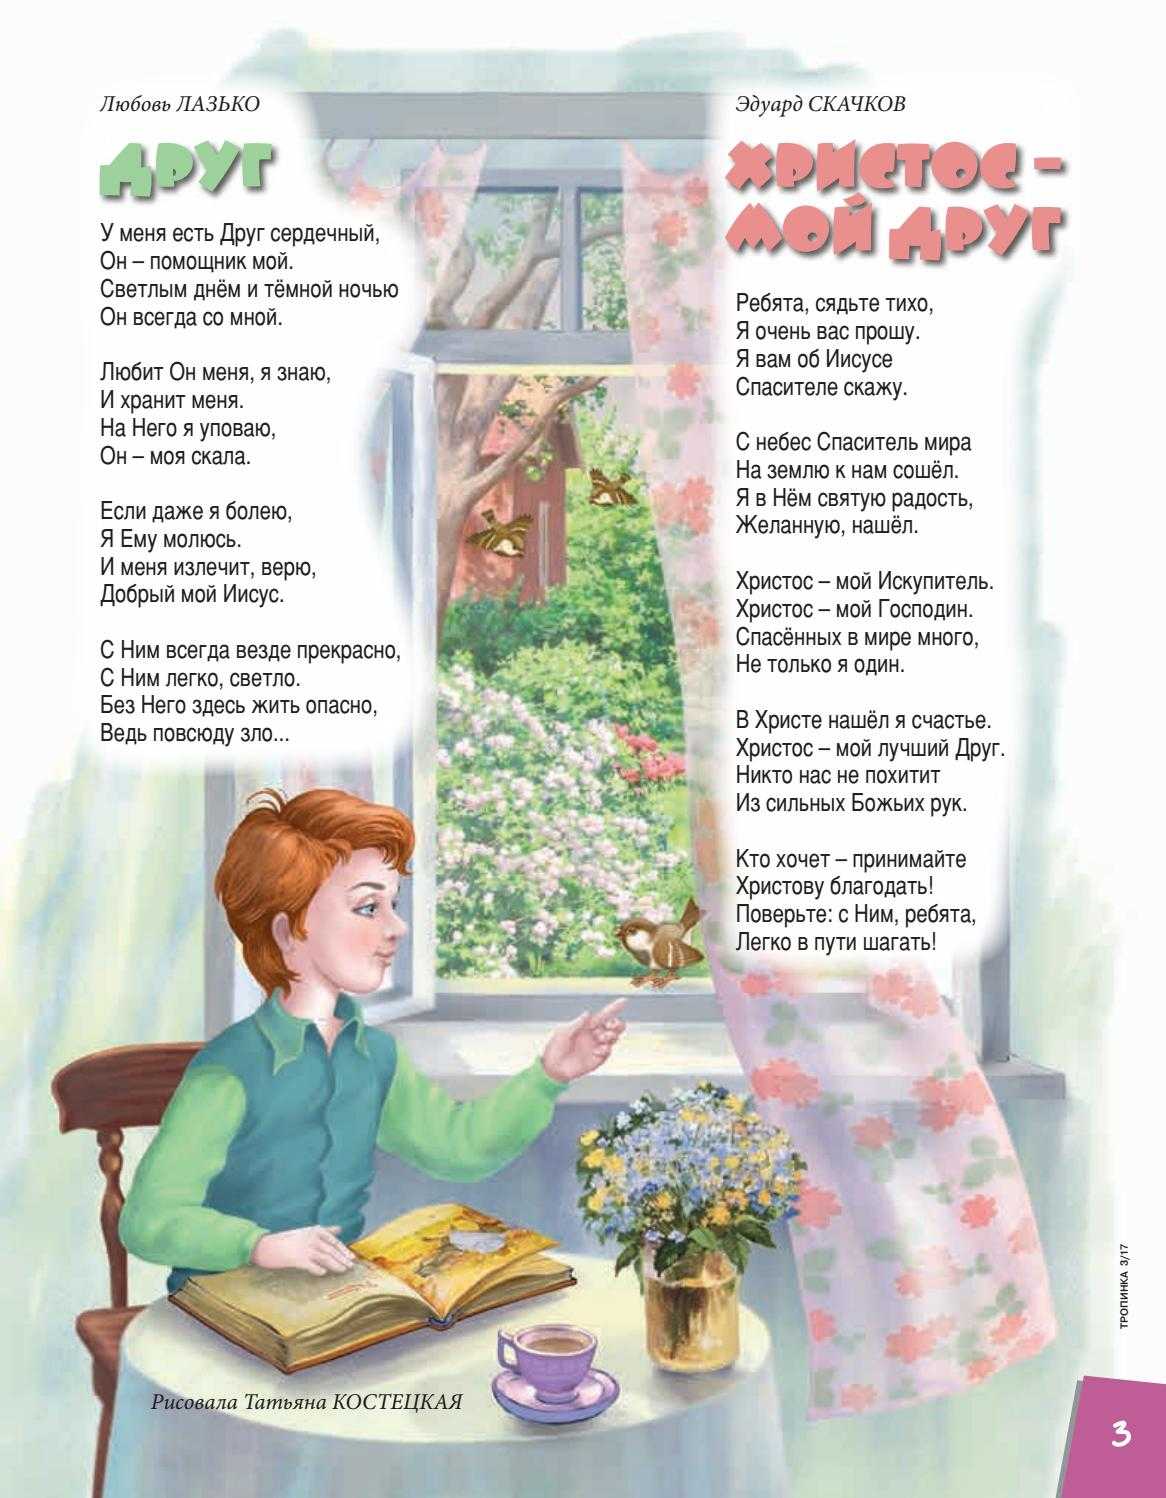 Стихи на пасху для детей: красивые короткие пасхальные стихотворения для праздника